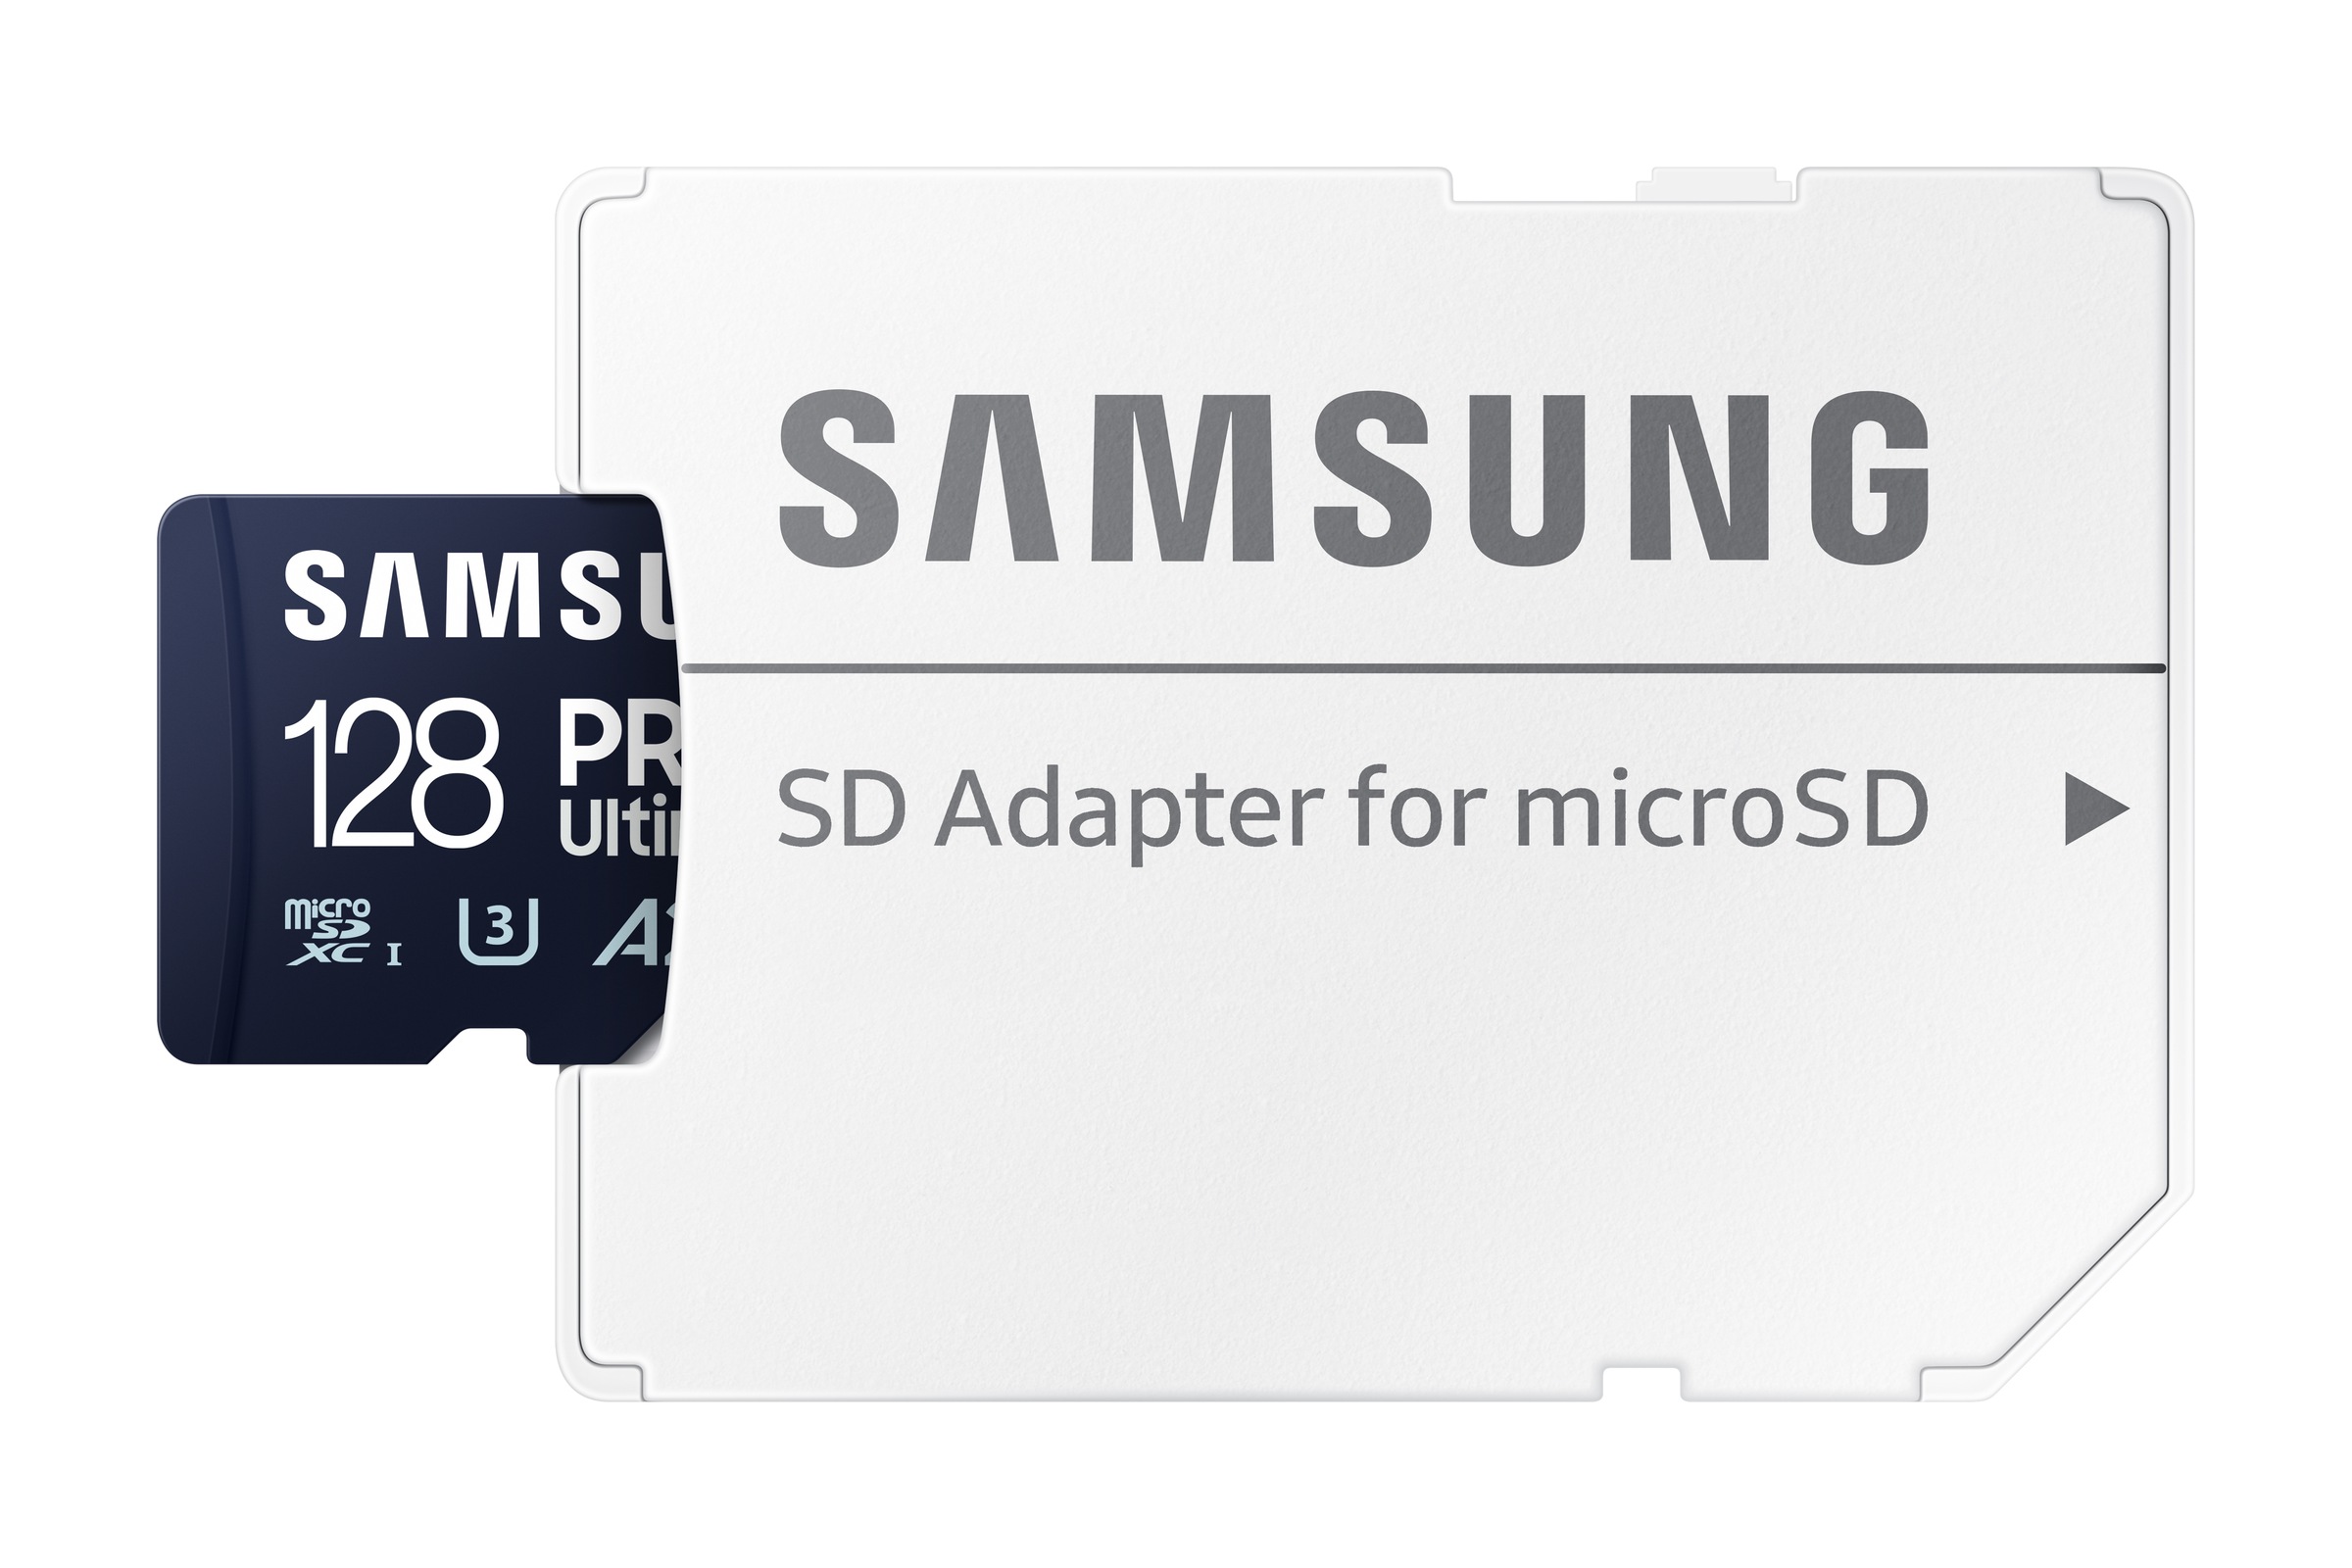 Samsung Speicherkarte »Pro Ultimate MicroSD«, (200 MB/s Lesegeschwindigkeit), mit SD-Adapter